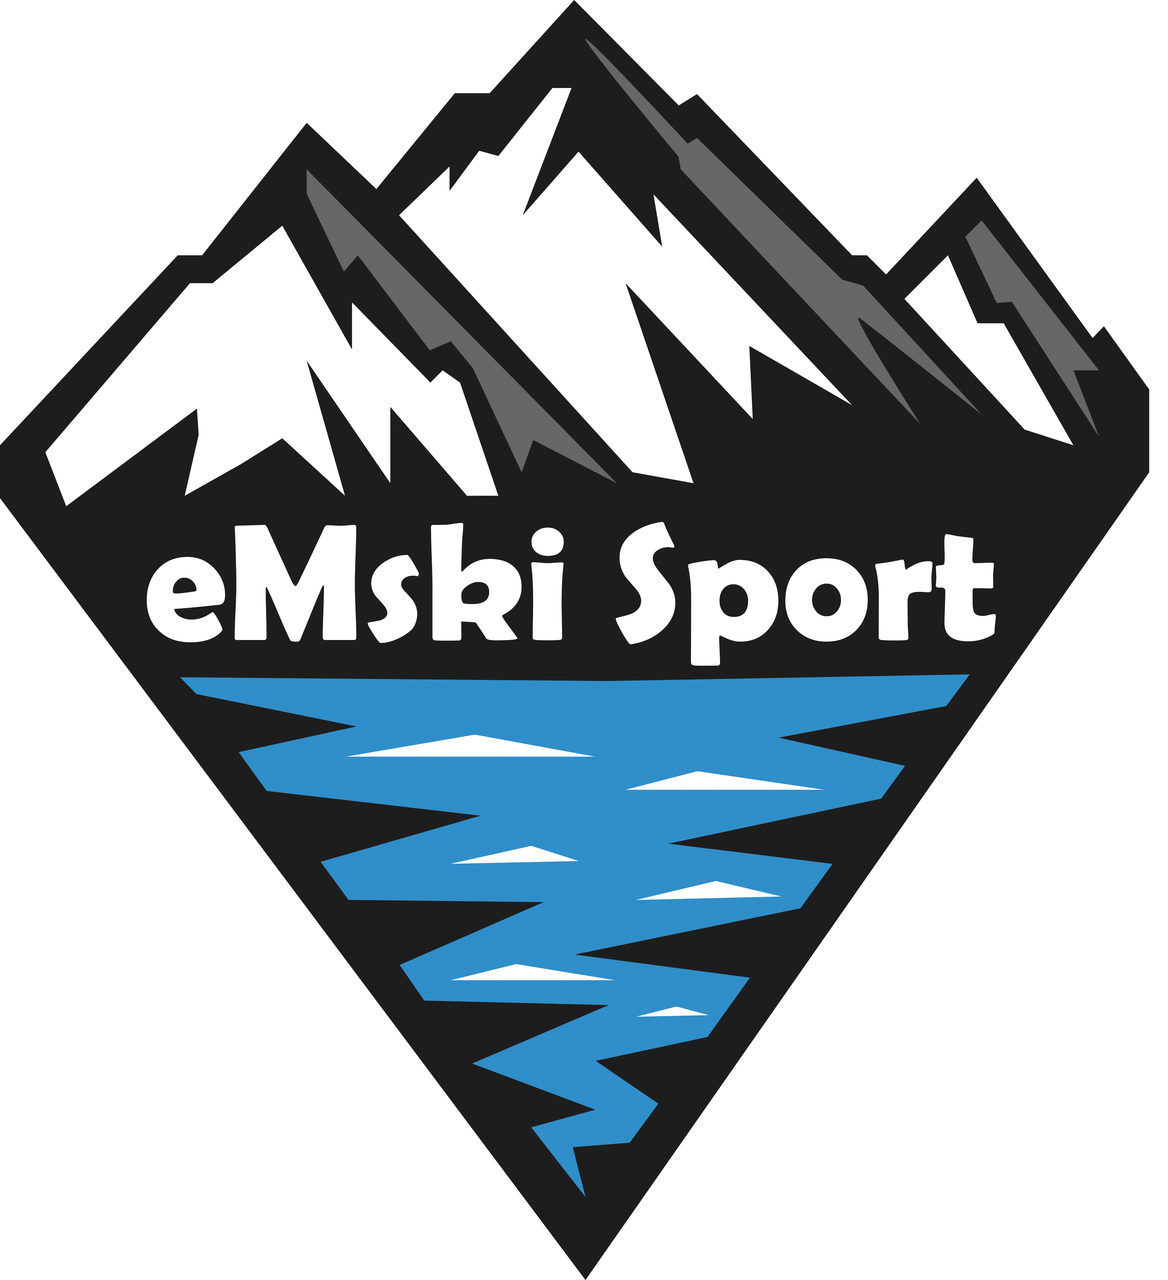 eMskisport.pl